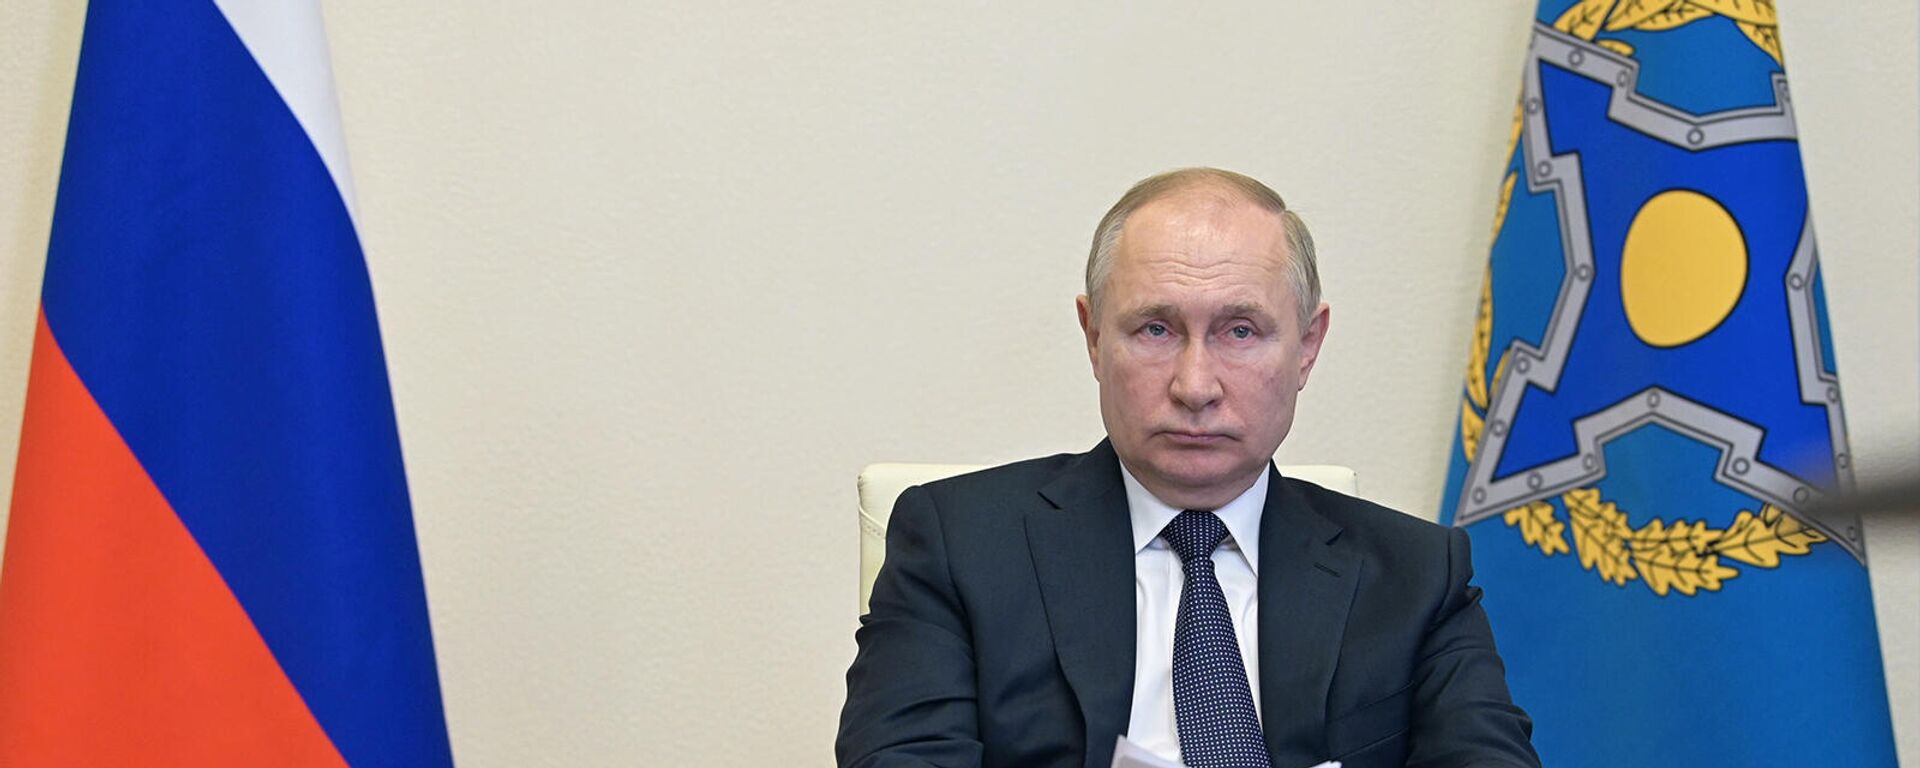 Ռուսաստանի նախագահ Վլադիմիր Պուտնիկը՝ ՀԱՊԿ-ի անդամ պետությունների ղեկավարների առցանց նիստում (10 հունվարի, 2022թ)․ Մոսկվա - Sputnik Արմենիա, 1920, 13.01.2022